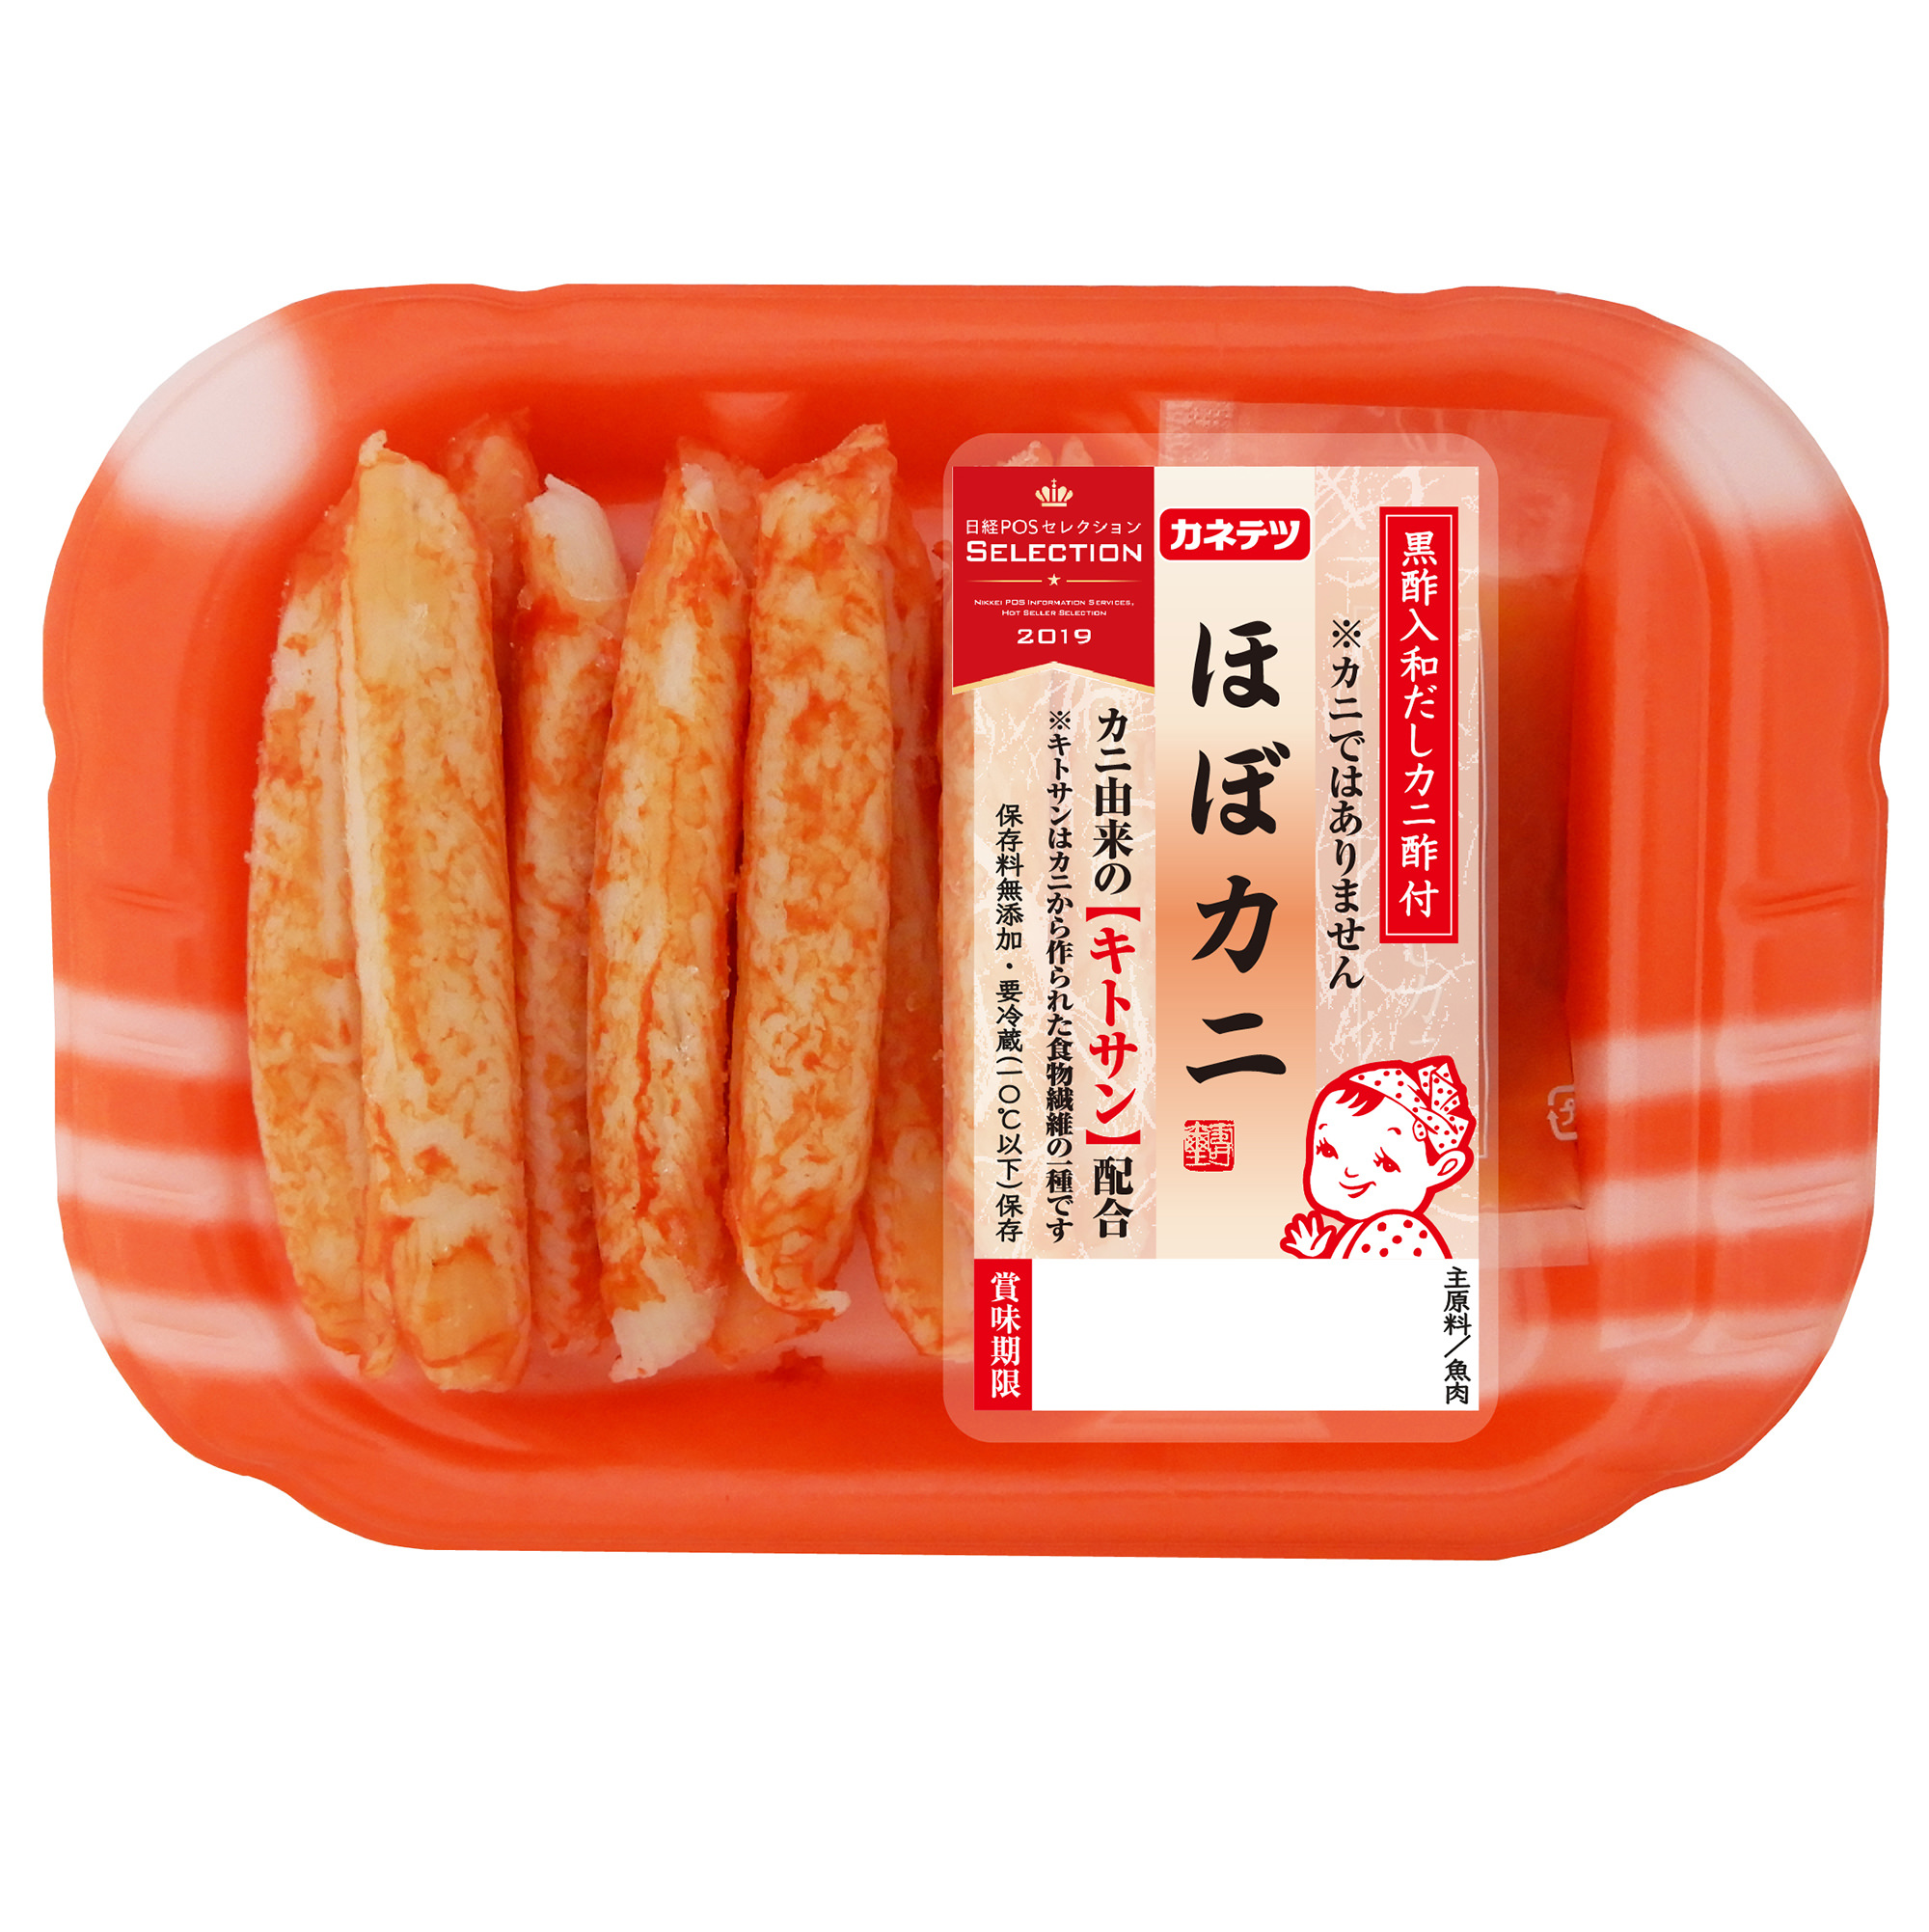 熊本製粉、九州産の小麦・もち麦を使った
「もち麦粉のホットケーキミックス」を9月1日から発売！